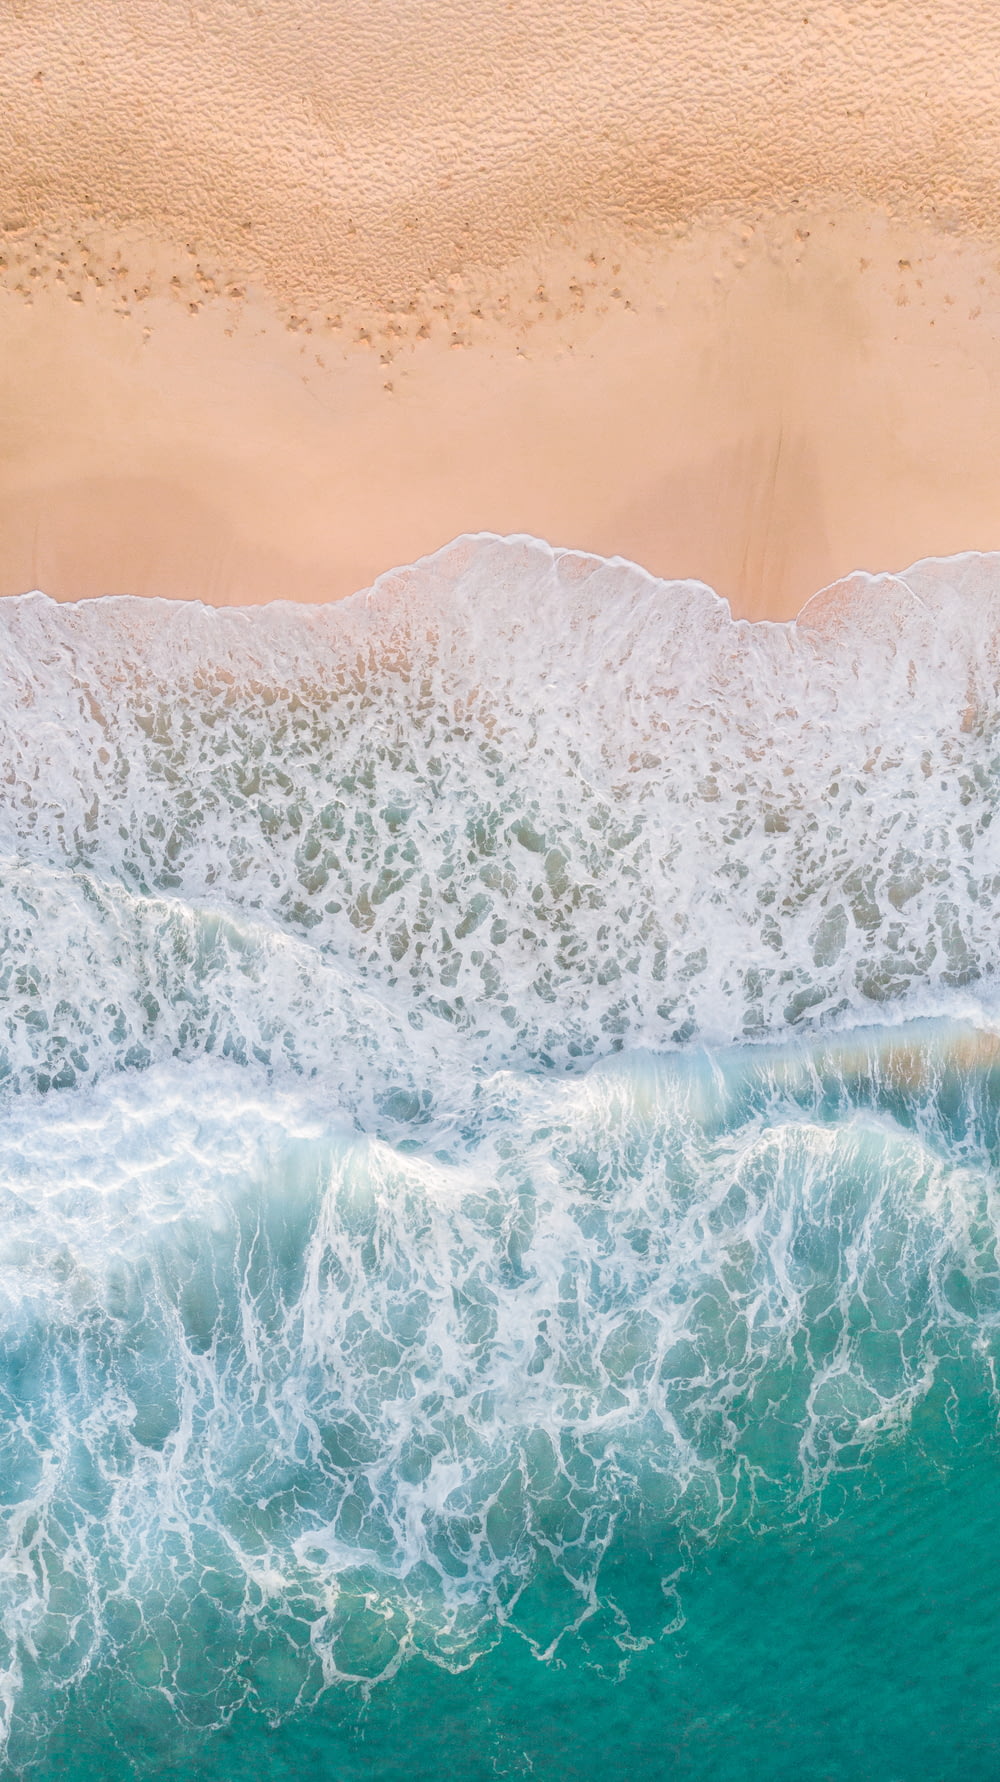 fotografia aérea de ondas respingando em praia de areia branca